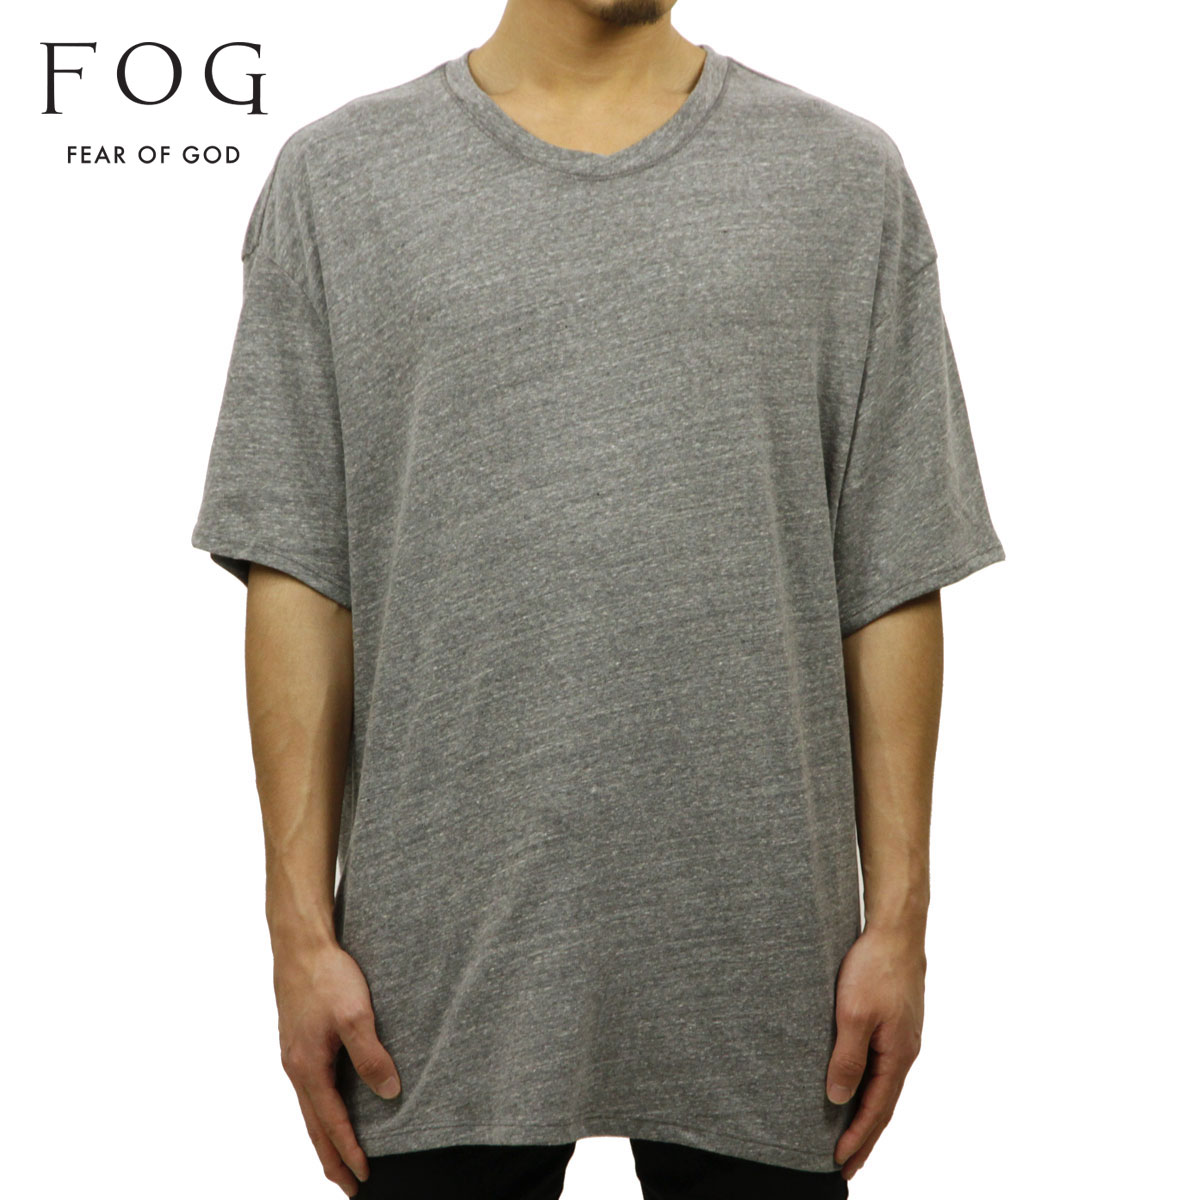  フィアオブゴッド fog essentials Tシャツ 正規品 FEAR OF GOD 半袖Tシャツ FOG - FEAR OF GOD ESSENTIALS TRI-BLEND BOXY T-SHIRT GRAY